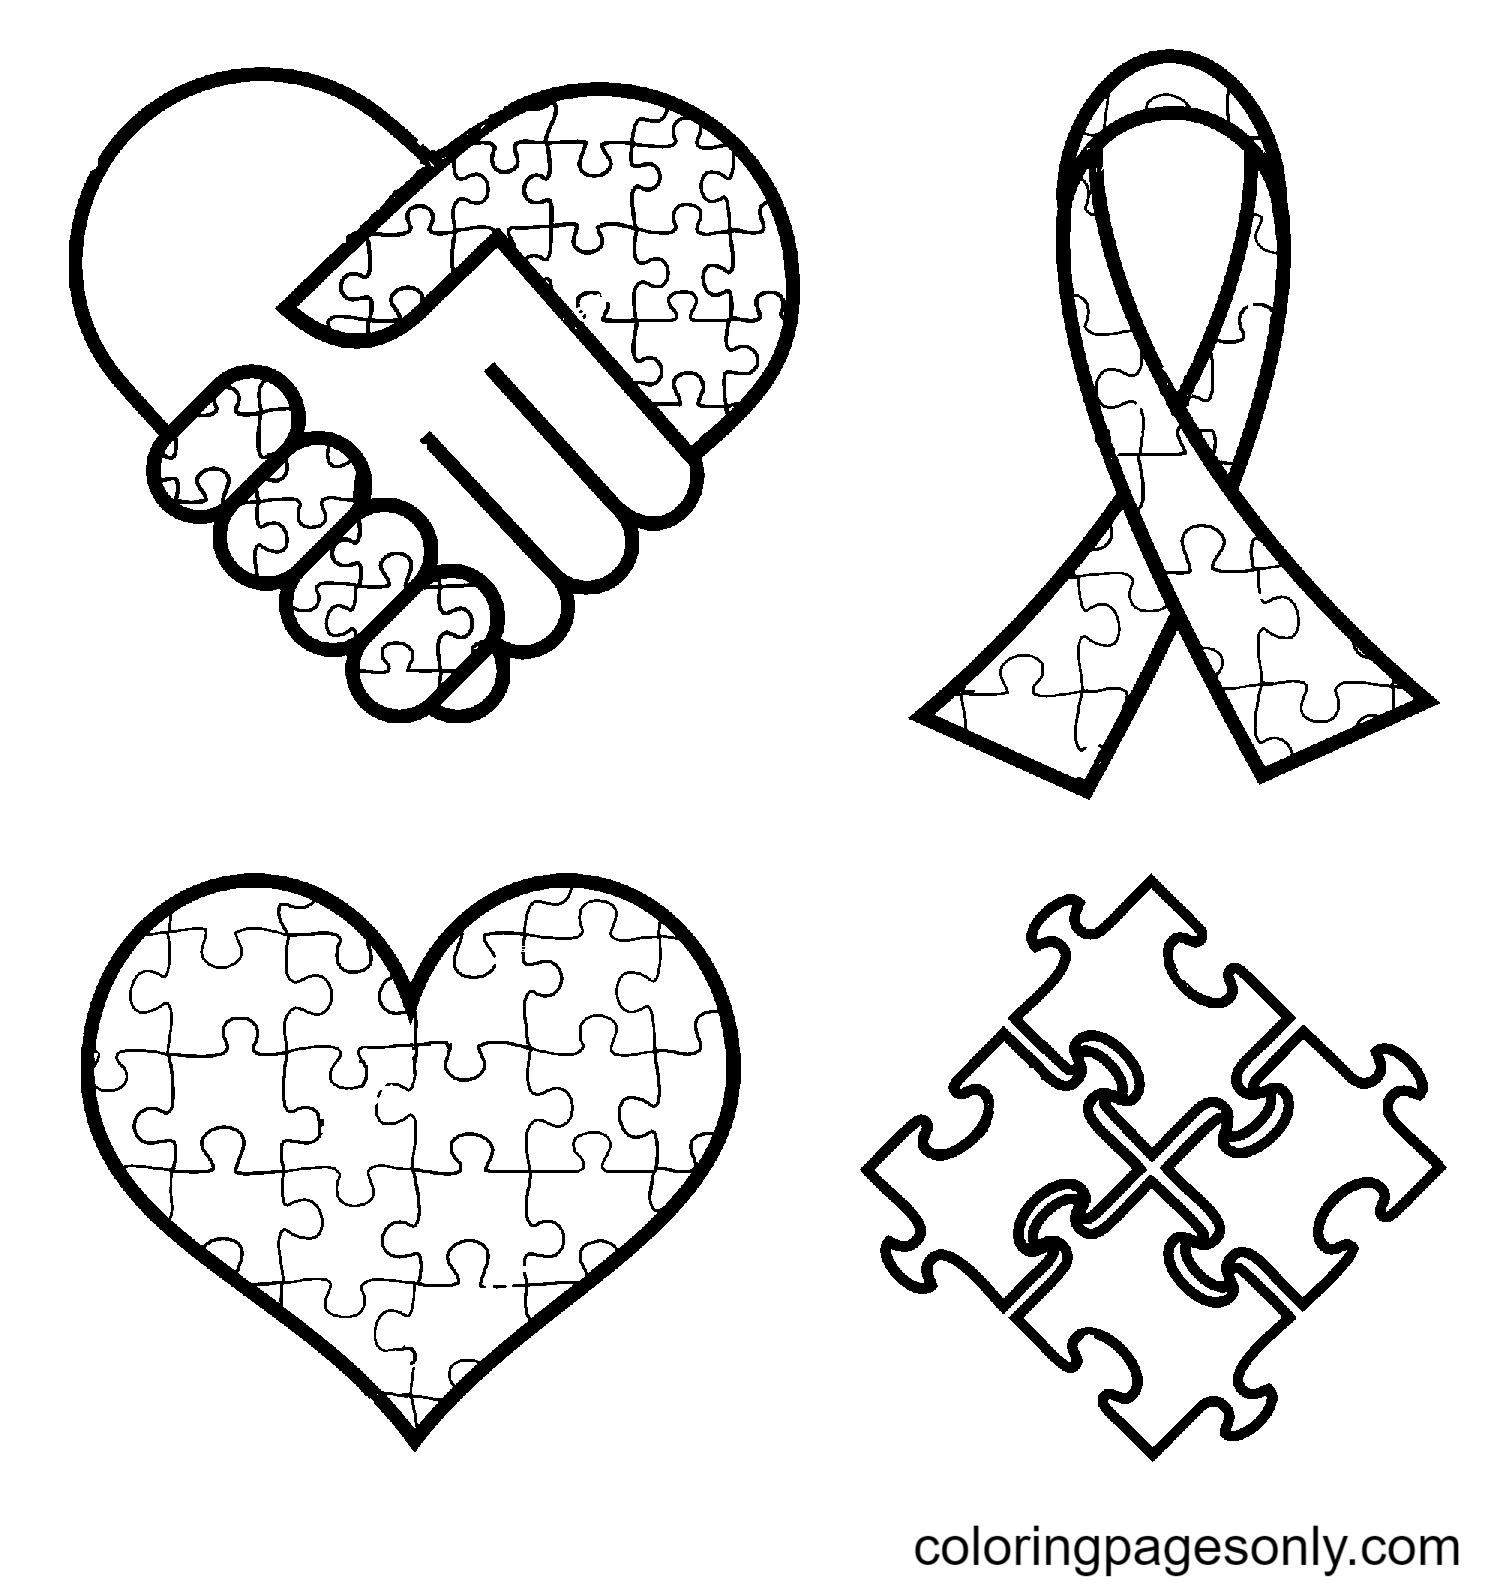 رموز التوعية بمرض التوحد، الأيدي، الشريط، القلب، من اليوم العالمي للتوعية بمرض التوحد